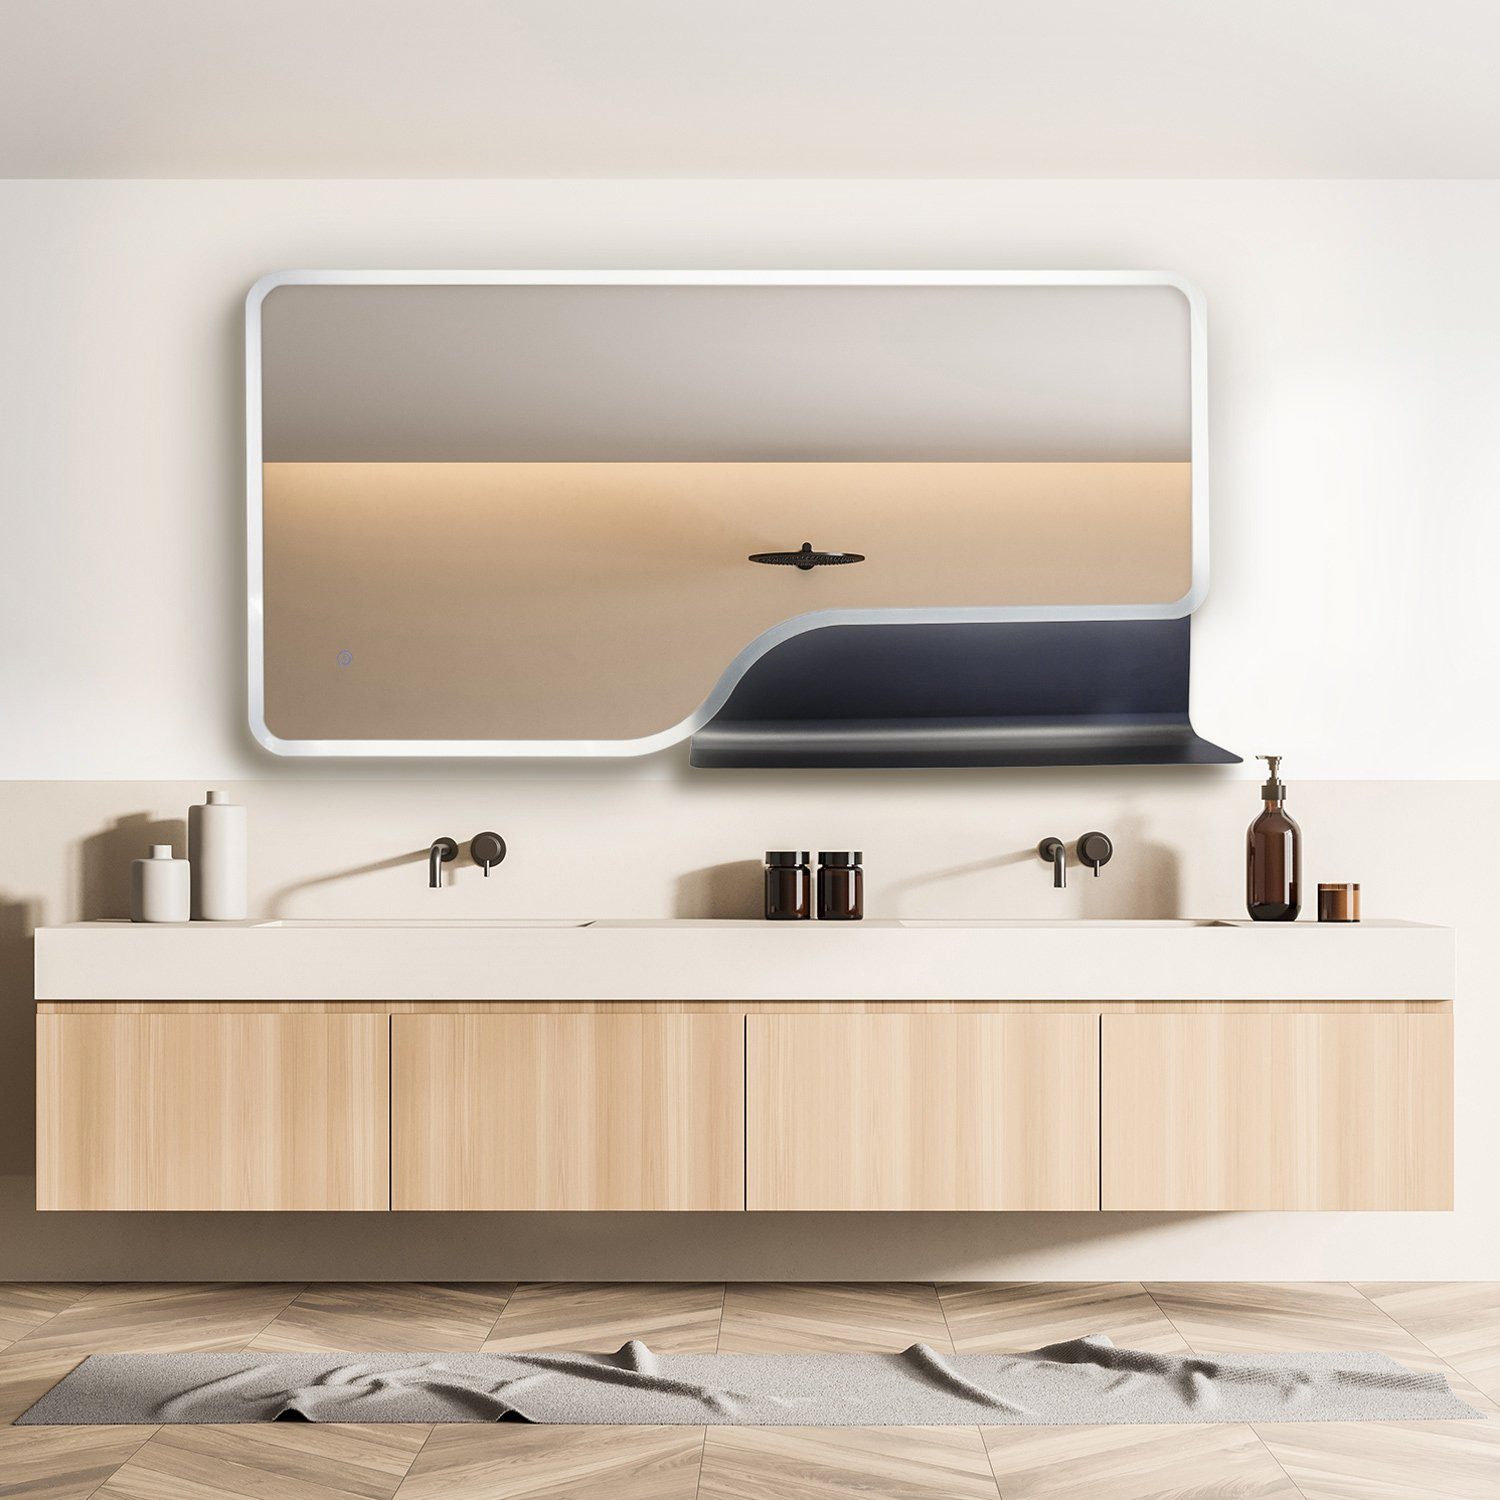 Spiegel LED wechselbar, LED Wandleuchte Badspiegel Backlight Touch-Wandspiegel FANTASY, Ablage Beleuchteter Paco Neutralweiß, Home